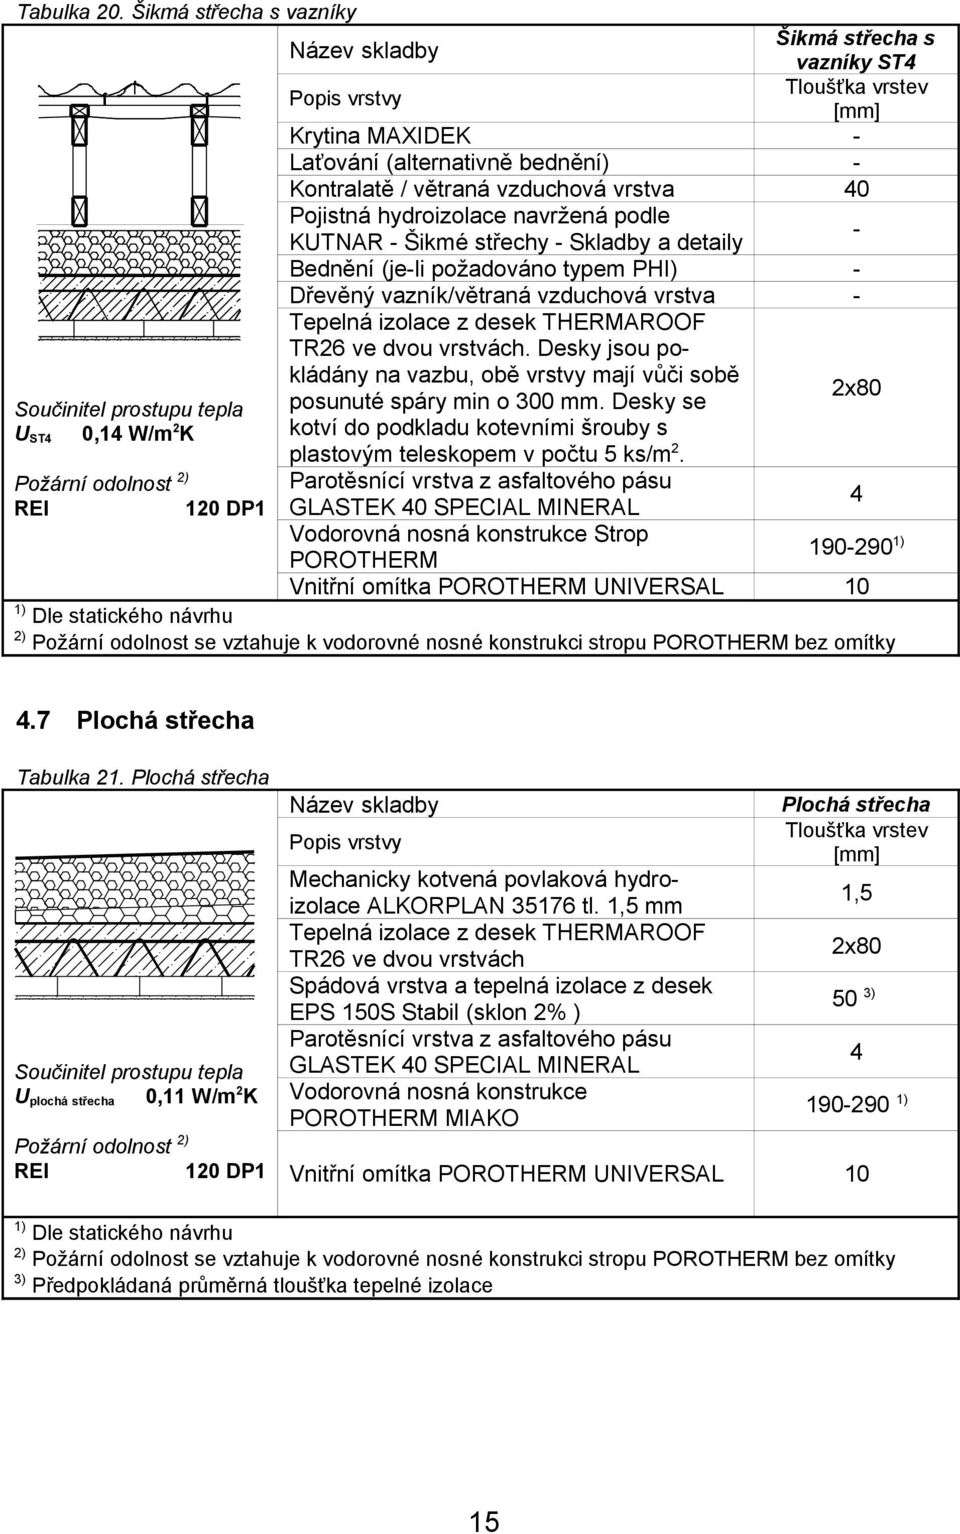 hydroizolace navržená podle KUTNAR - Šikmé střechy - Skladby a detaily Bednění (je-li požadováno typem PHI) Dřevěný vazník/větraná vzduchová vrstva Tepelná izolace z desek THERMAROOF TR26 ve dvou